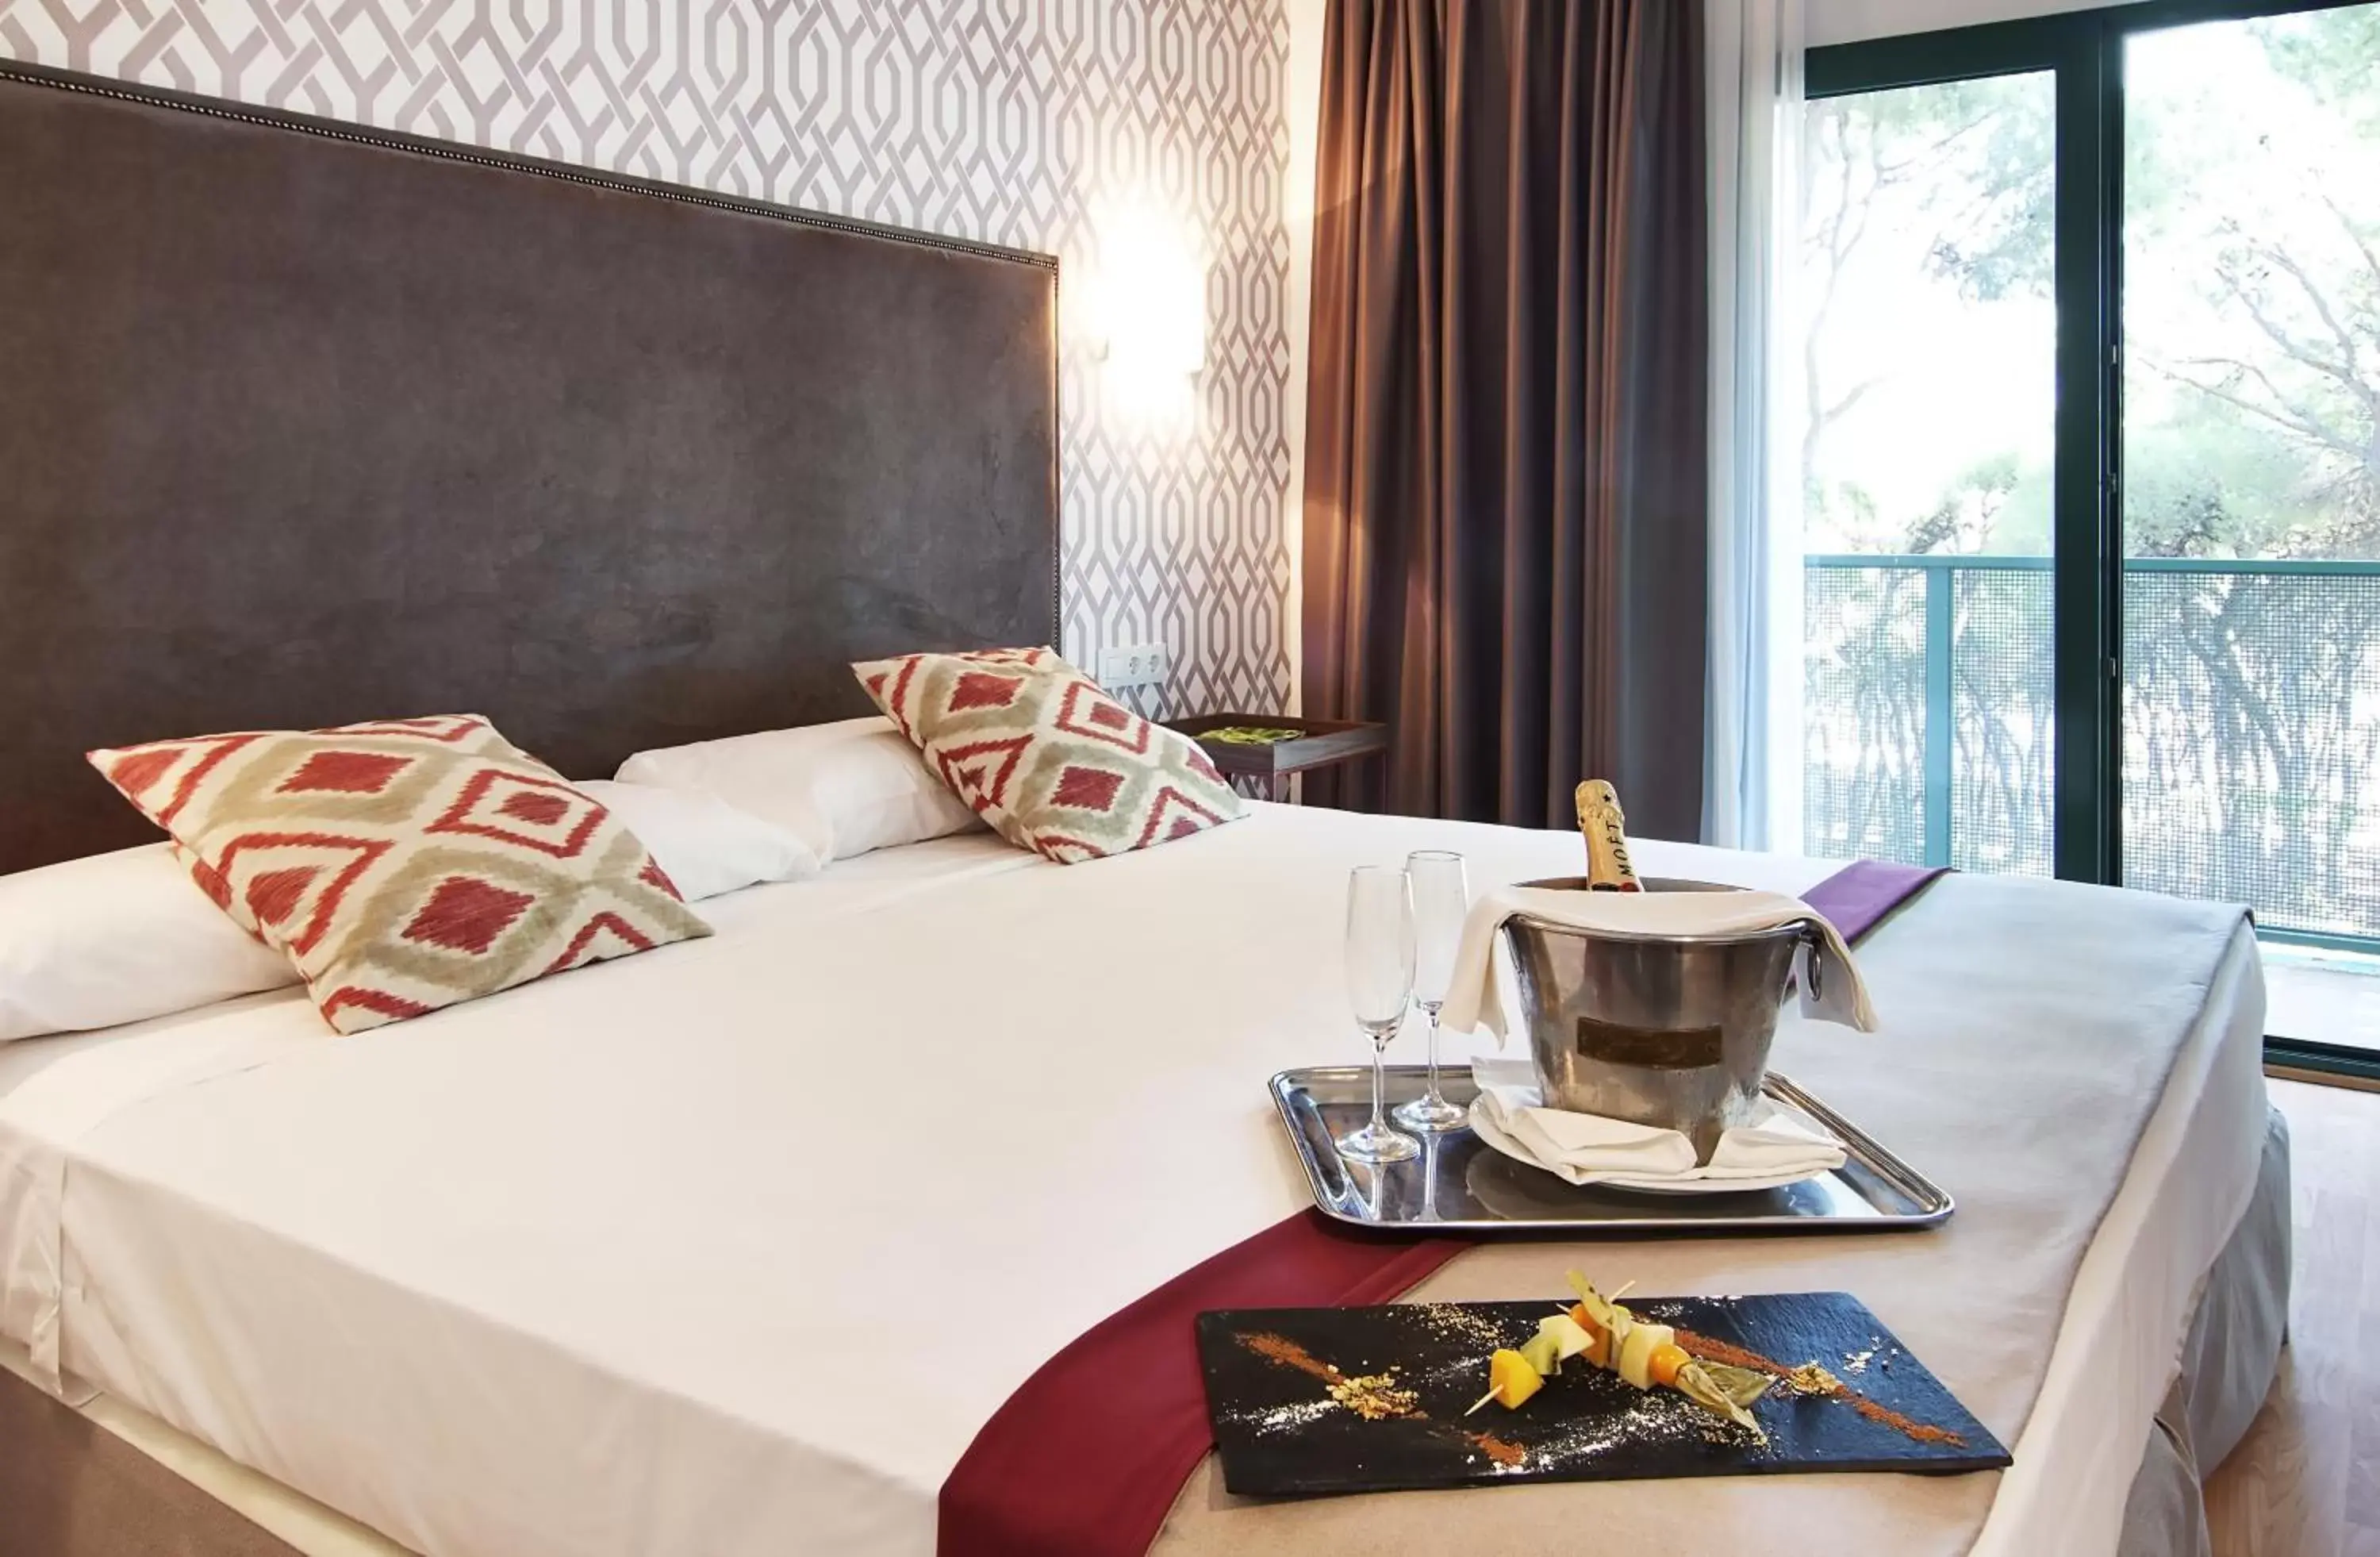 Bed in Hotel Oromana